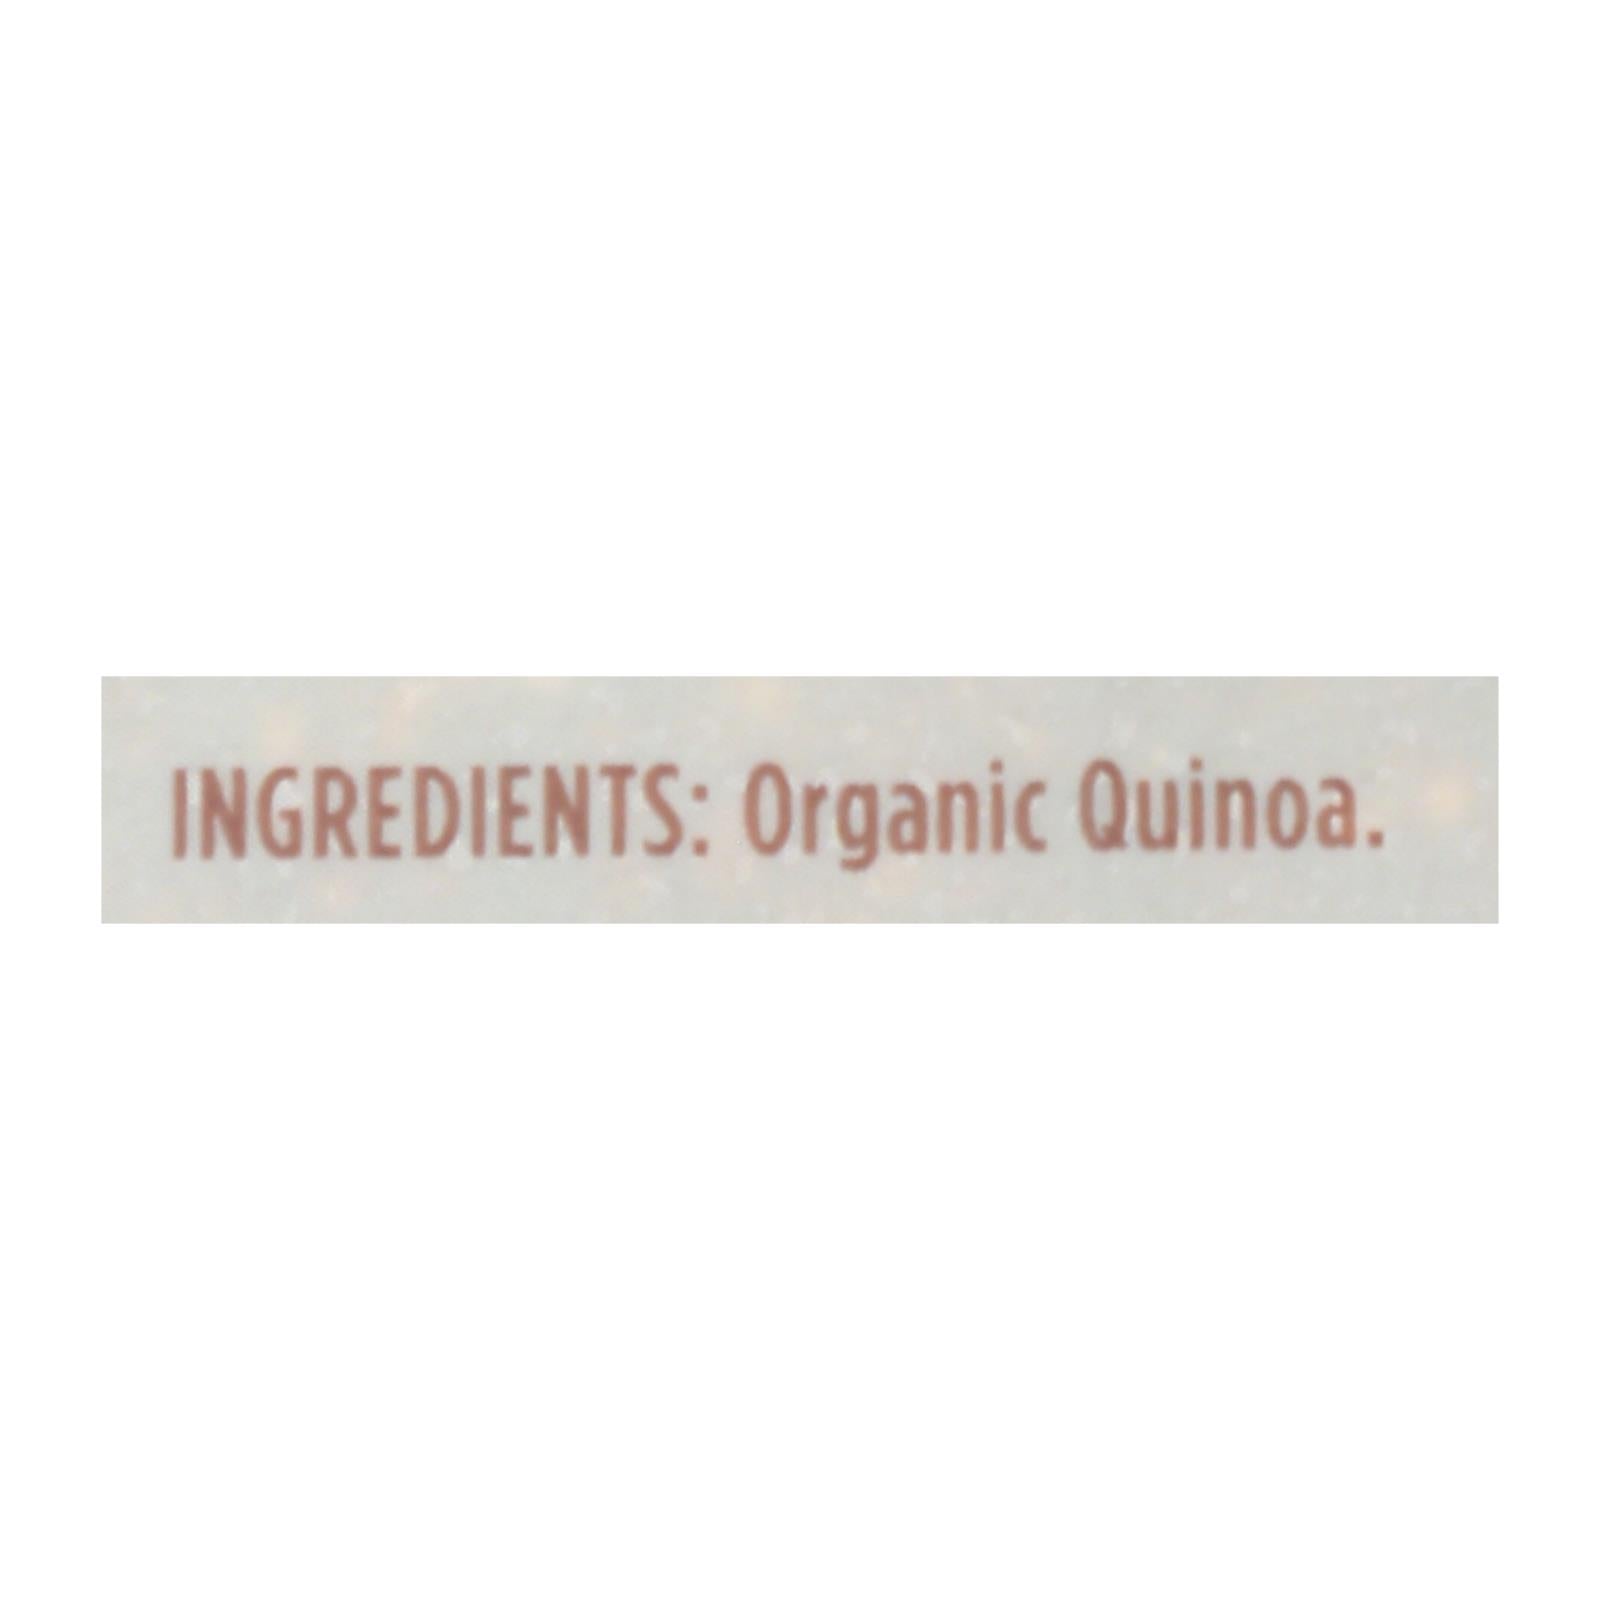 Lundberg Family Farms Organic Quinoa - Tri-color - Case Of 6 - 1 Lb.